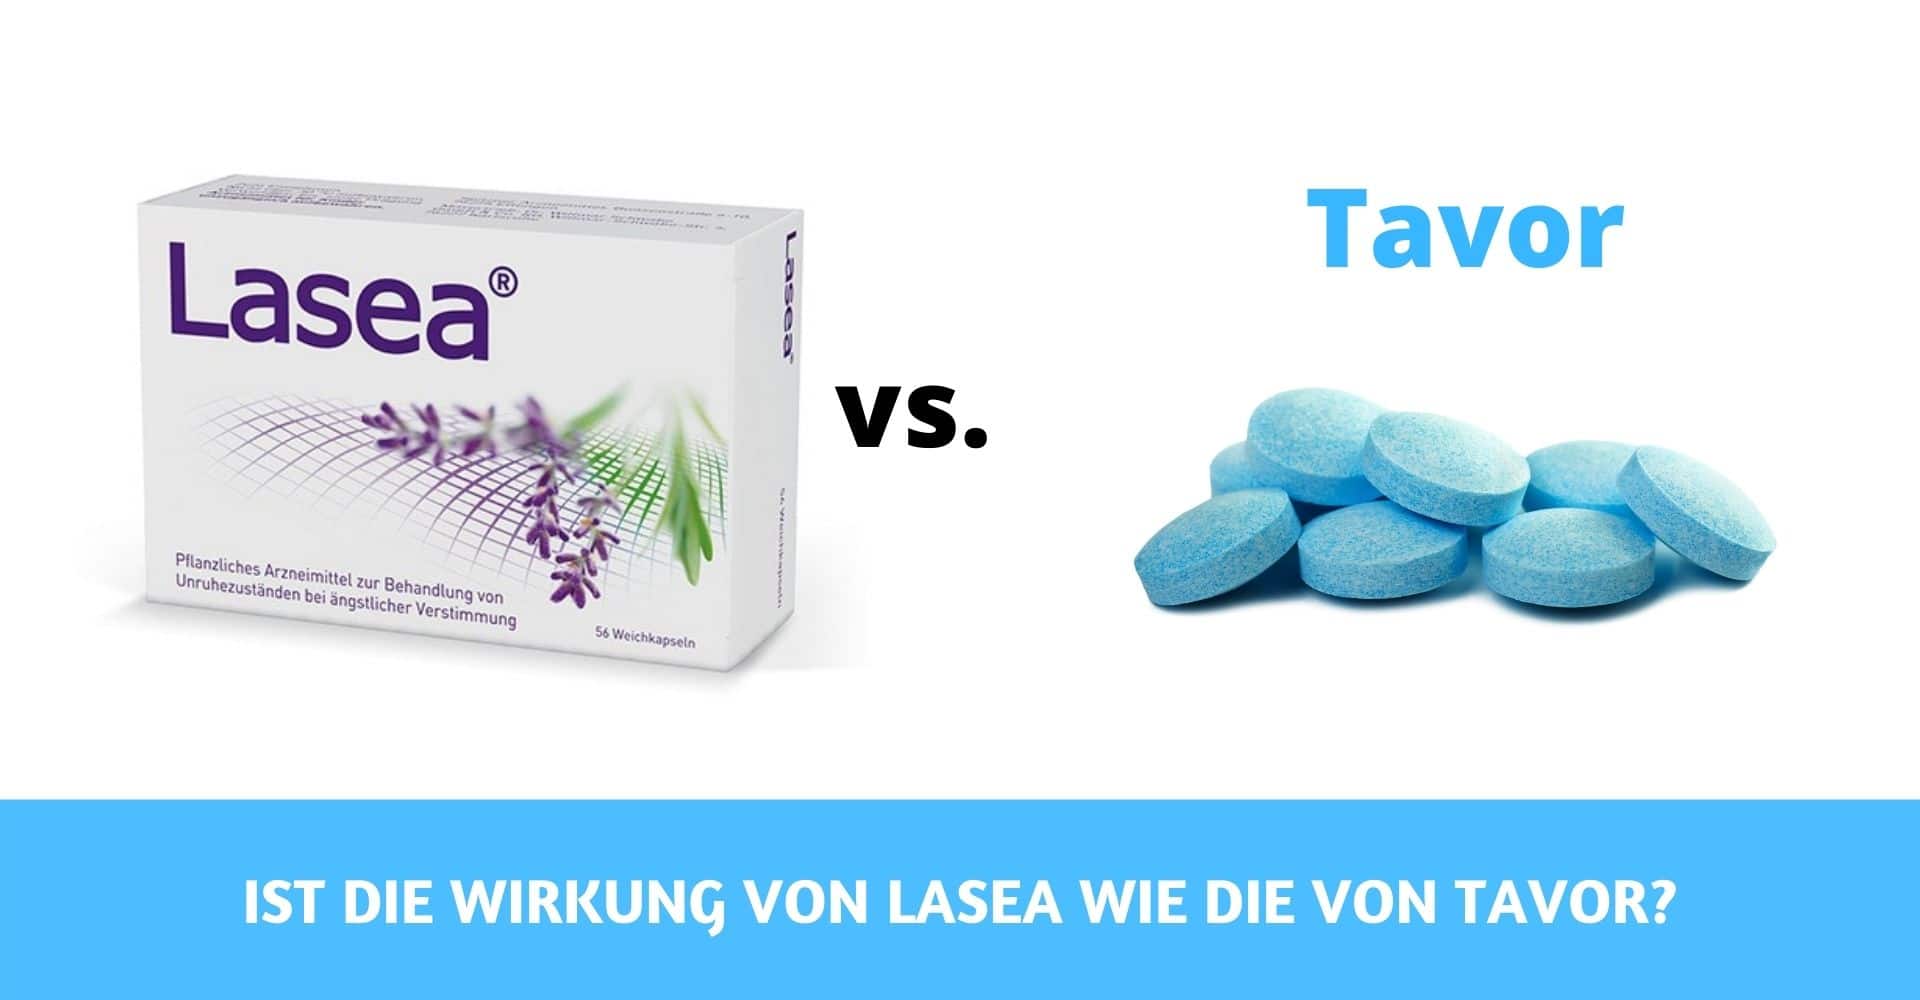 Ist die Wirkung von Lasea wie die von Tavor?